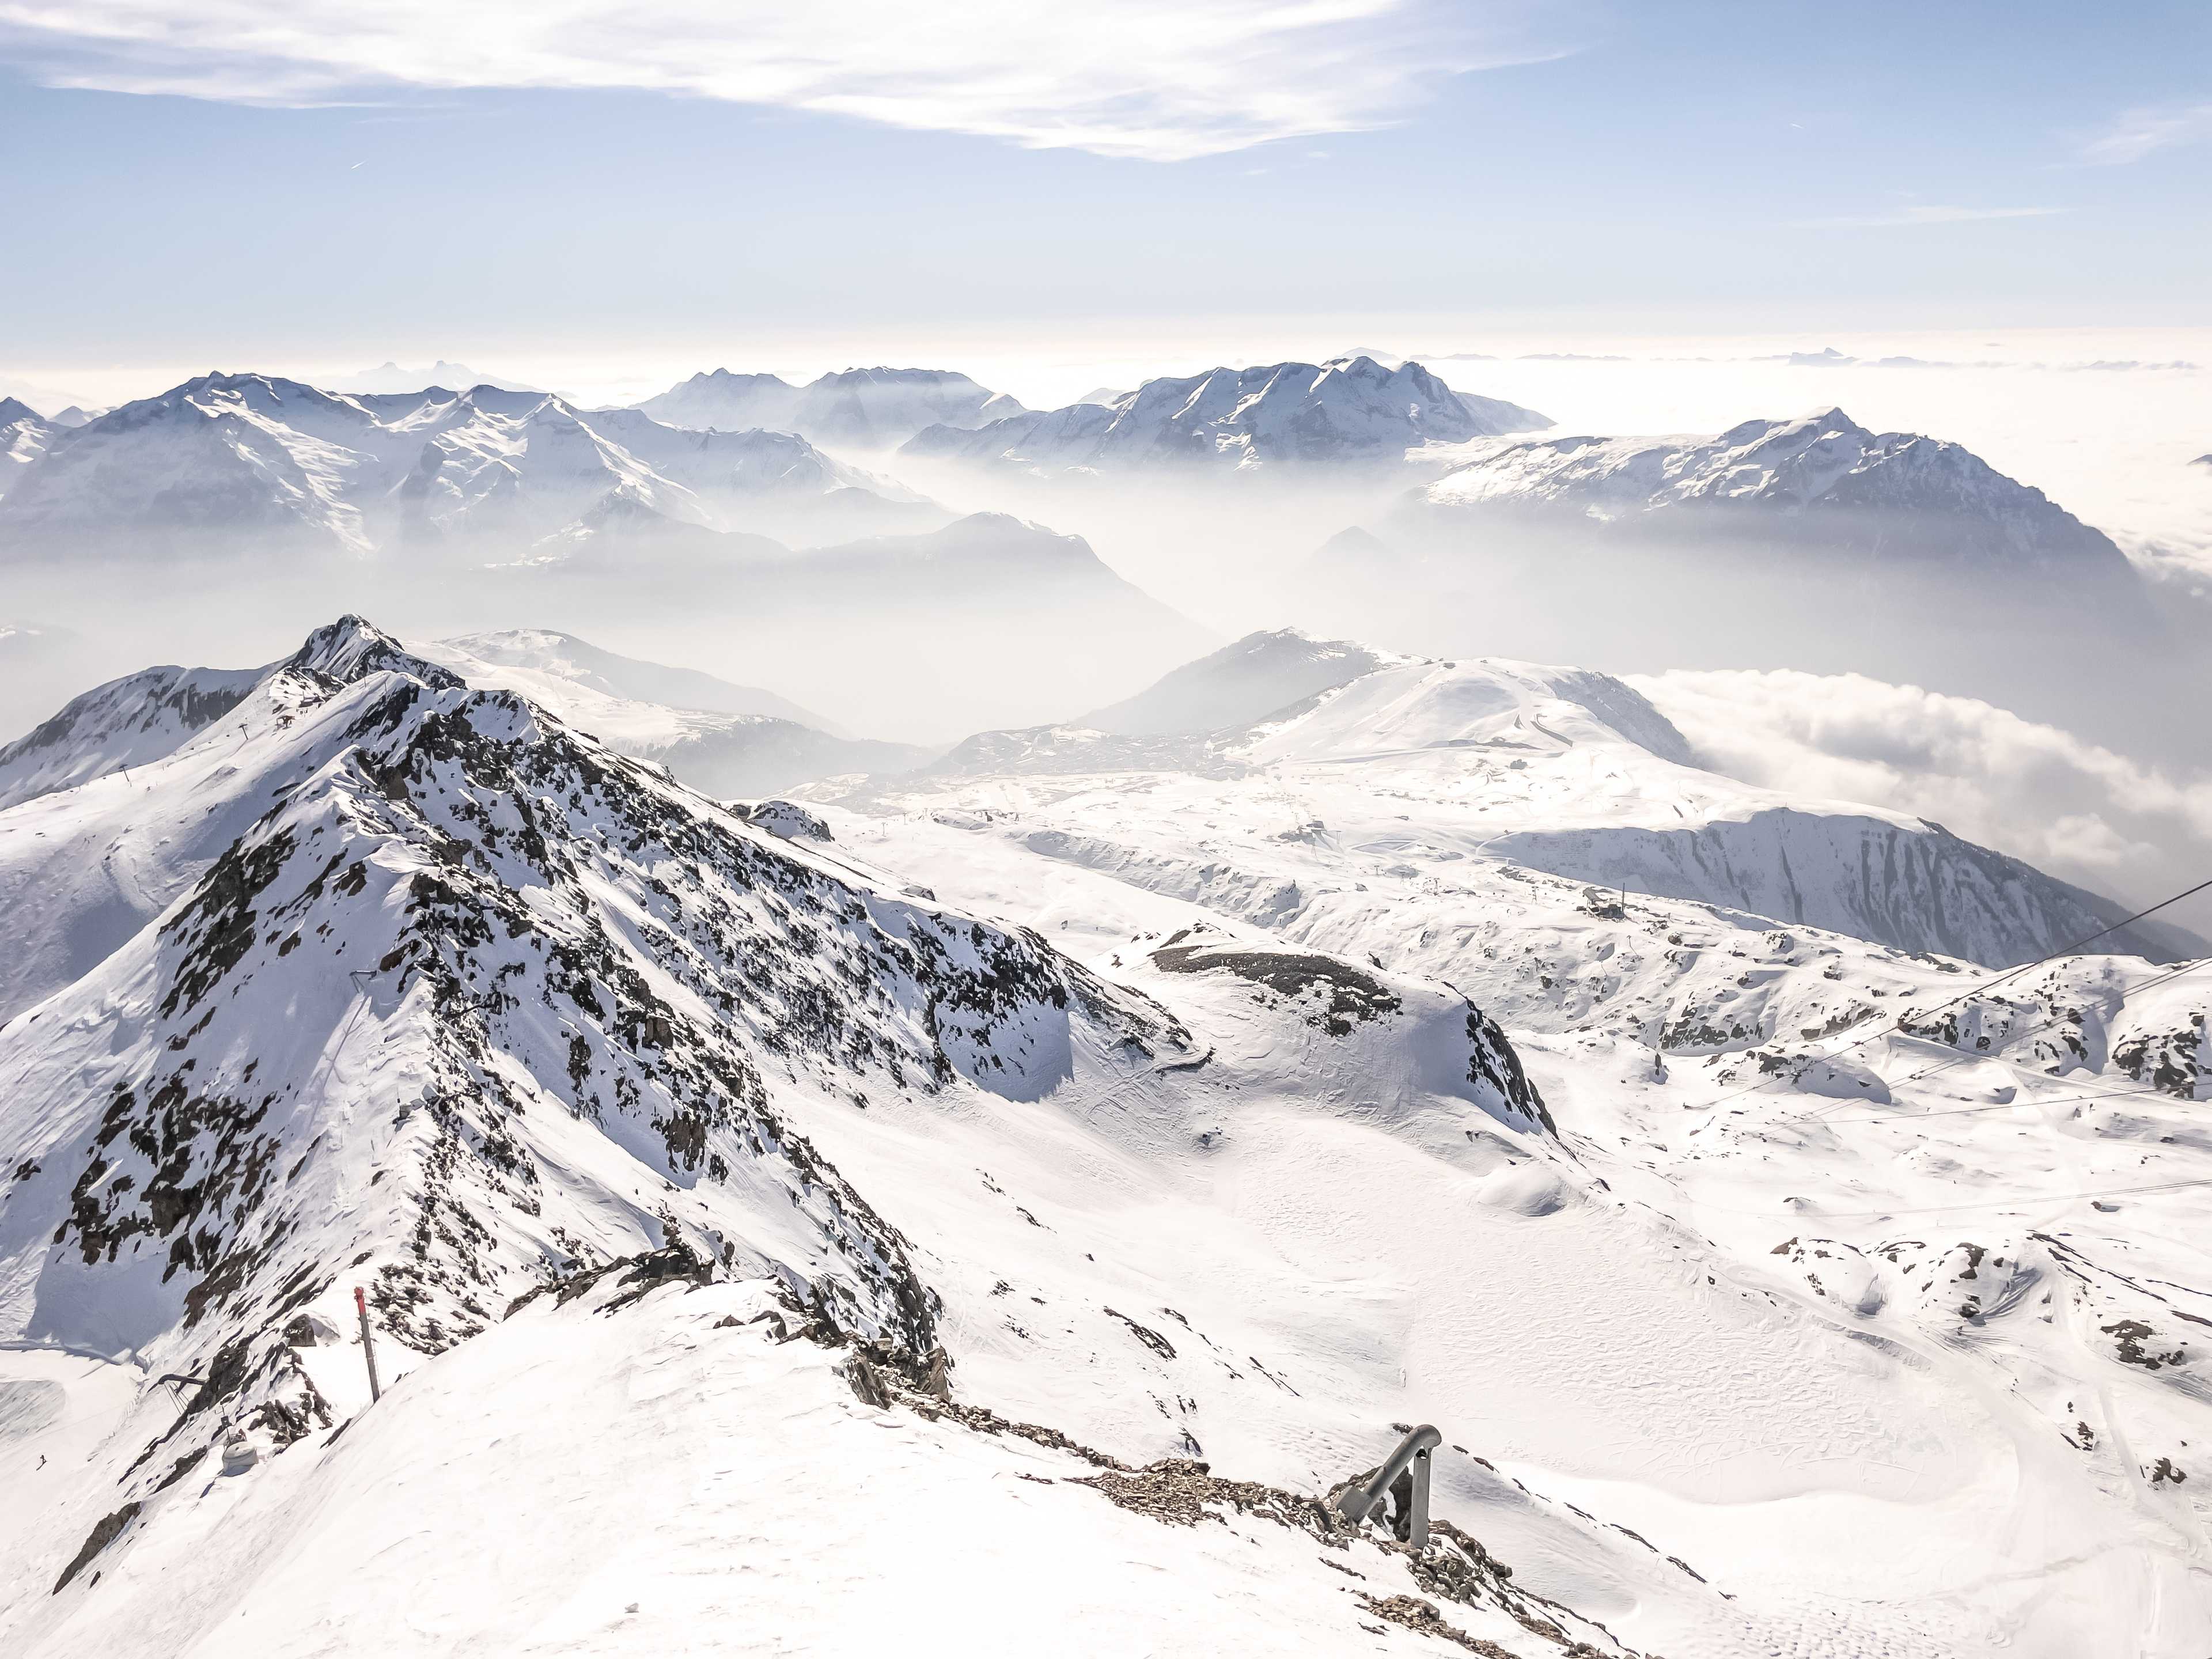 View towards Herpie, Pic Blanc (3330 m a.s.l.), Alpe d'Huez